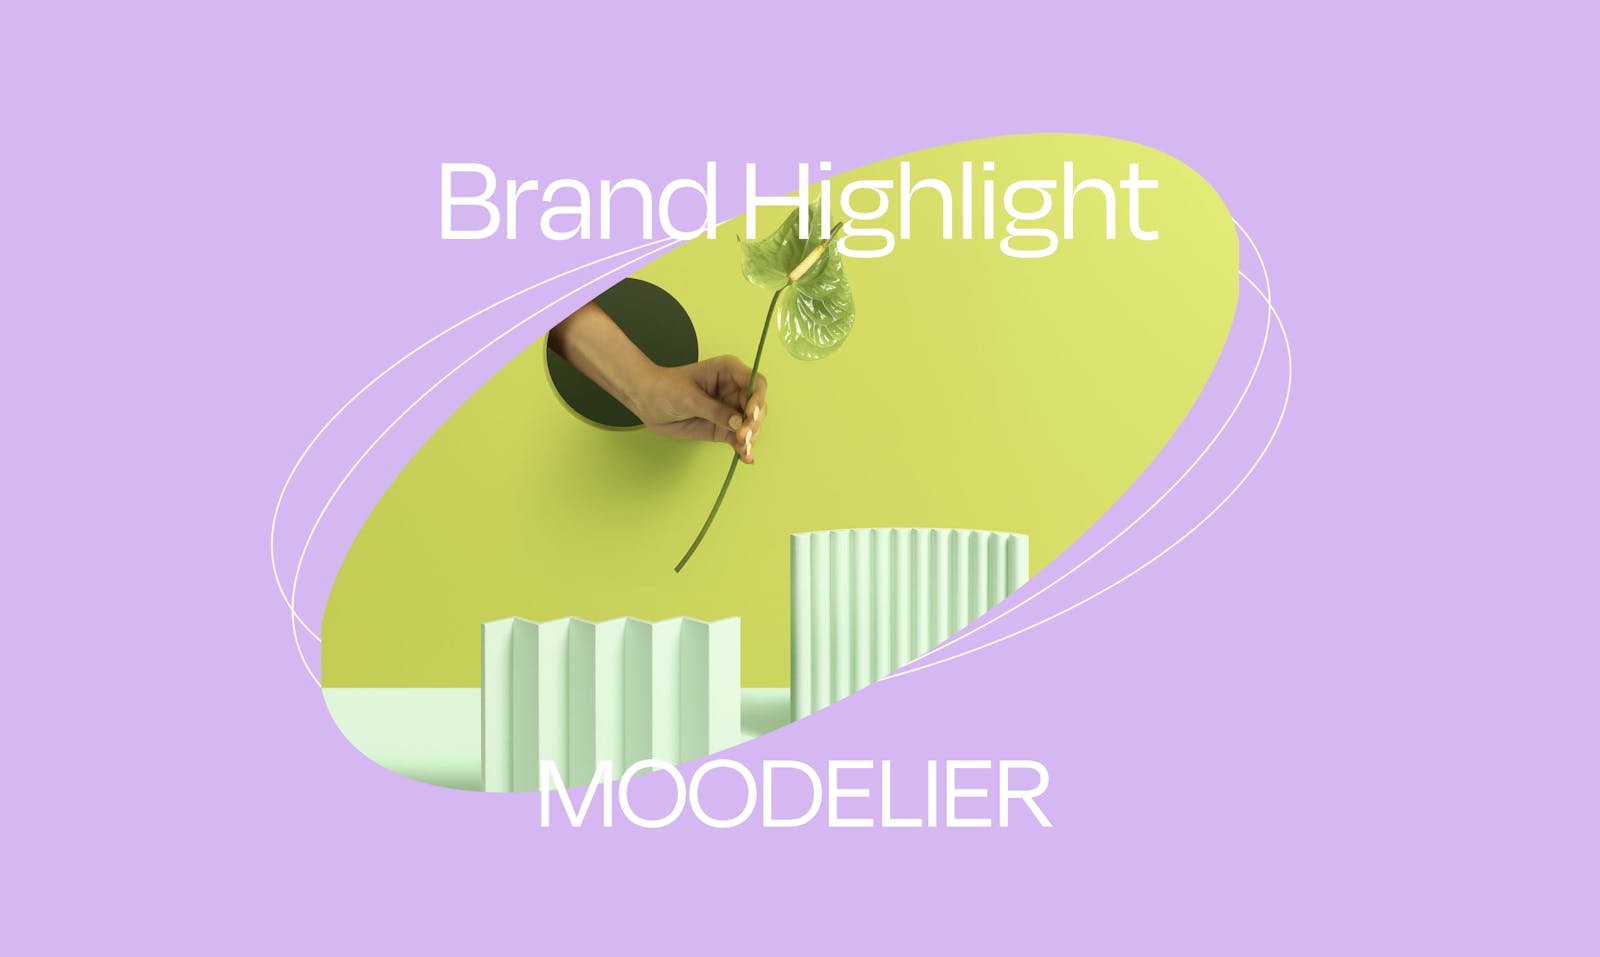 Brand Highlight: MOODELIER